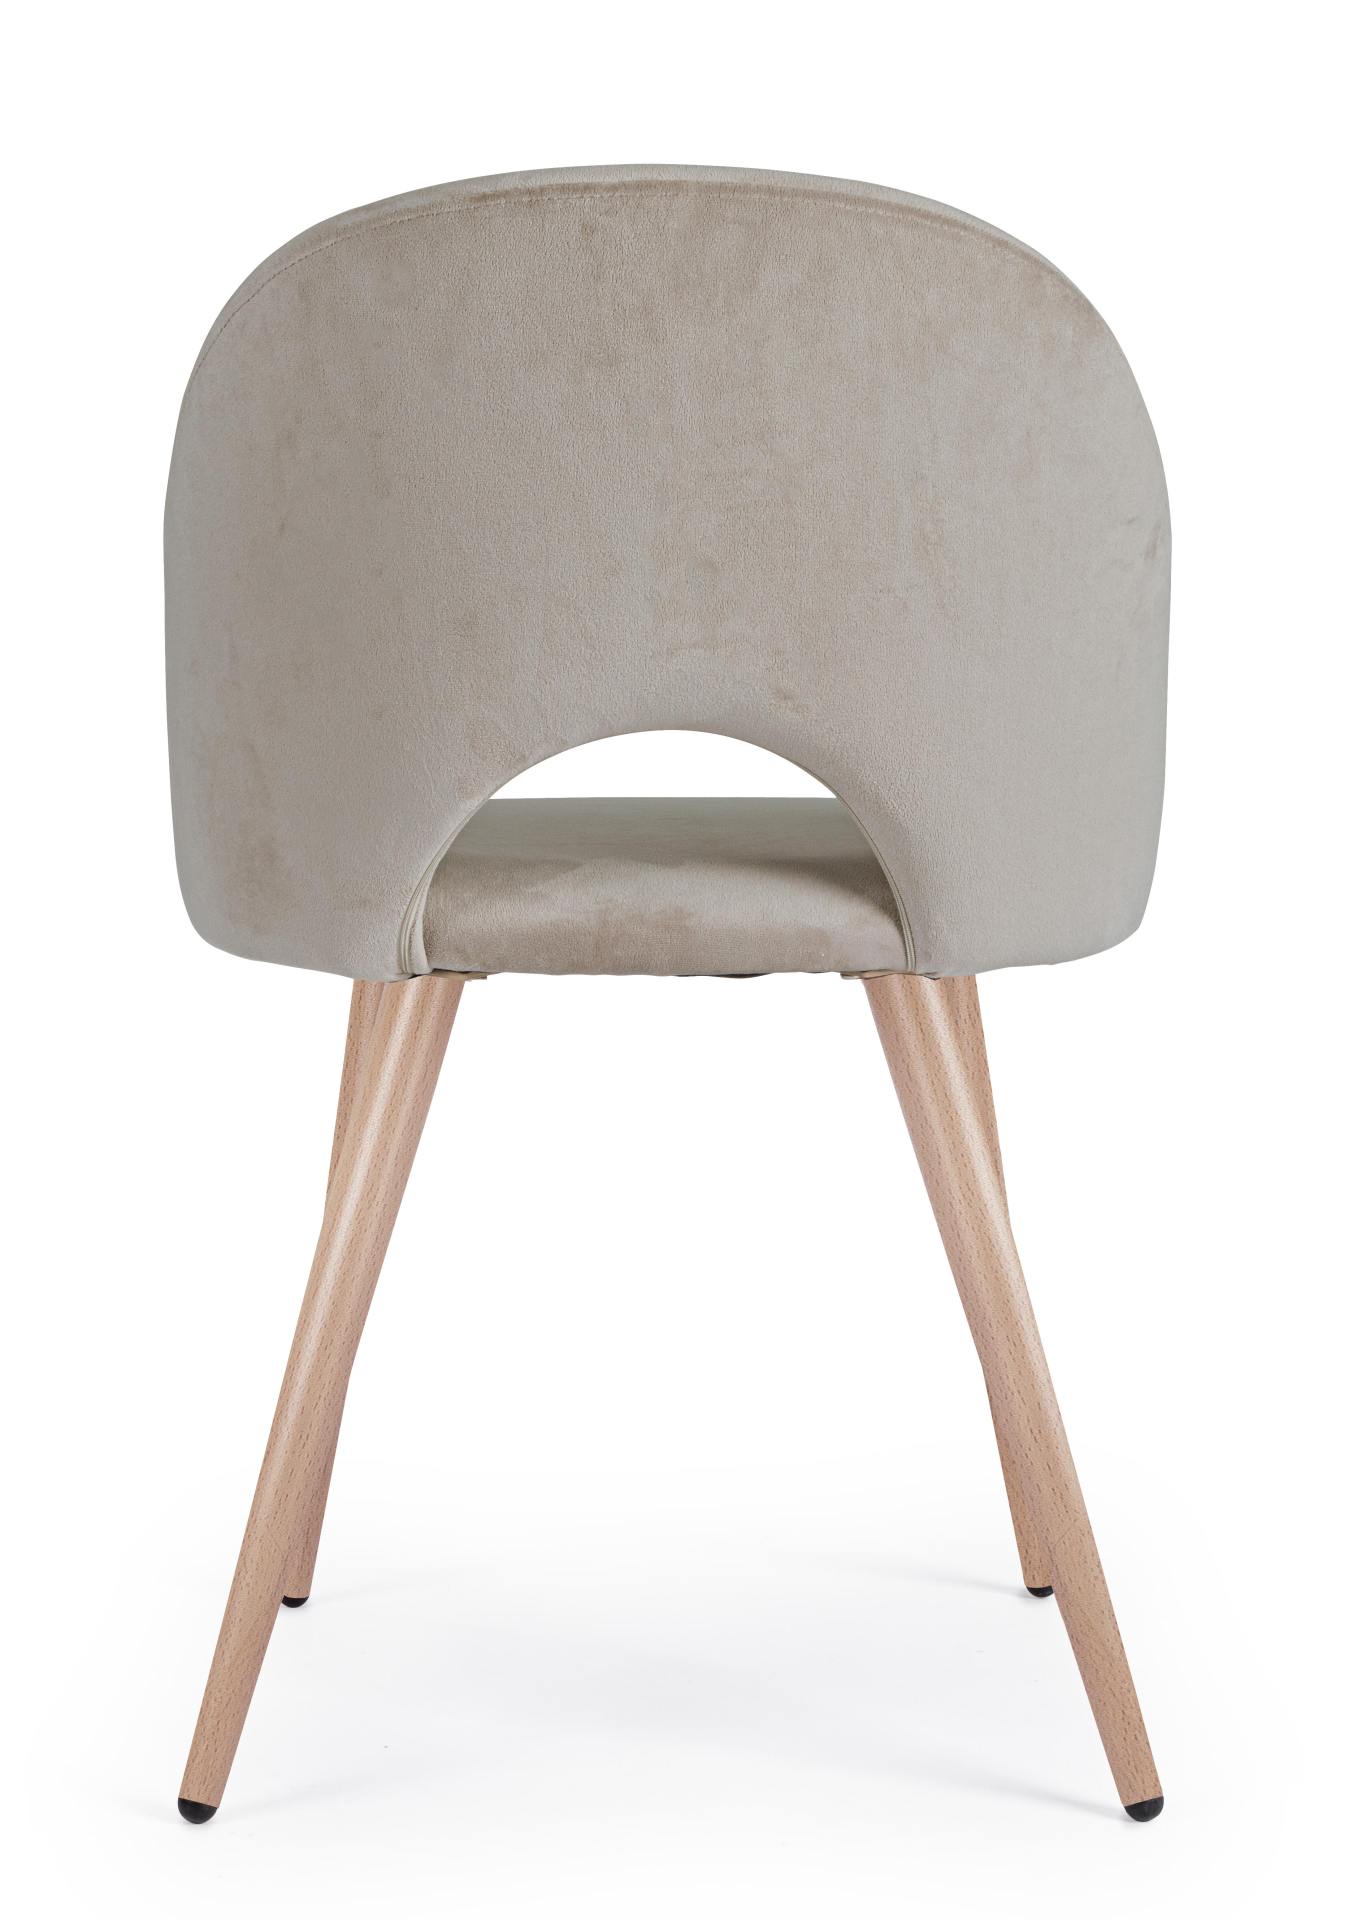 Der Esszimmerstuhl Linzey besitzt einen Samt-Bezug, welcher einen Taupe Farbton besitzt. Das Gestell ist aus Metall und hat eine Holz-Optik. Das Design des Stuhls ist modern. Die Sitzhöhe des Stuhls beträgt 46 cm.